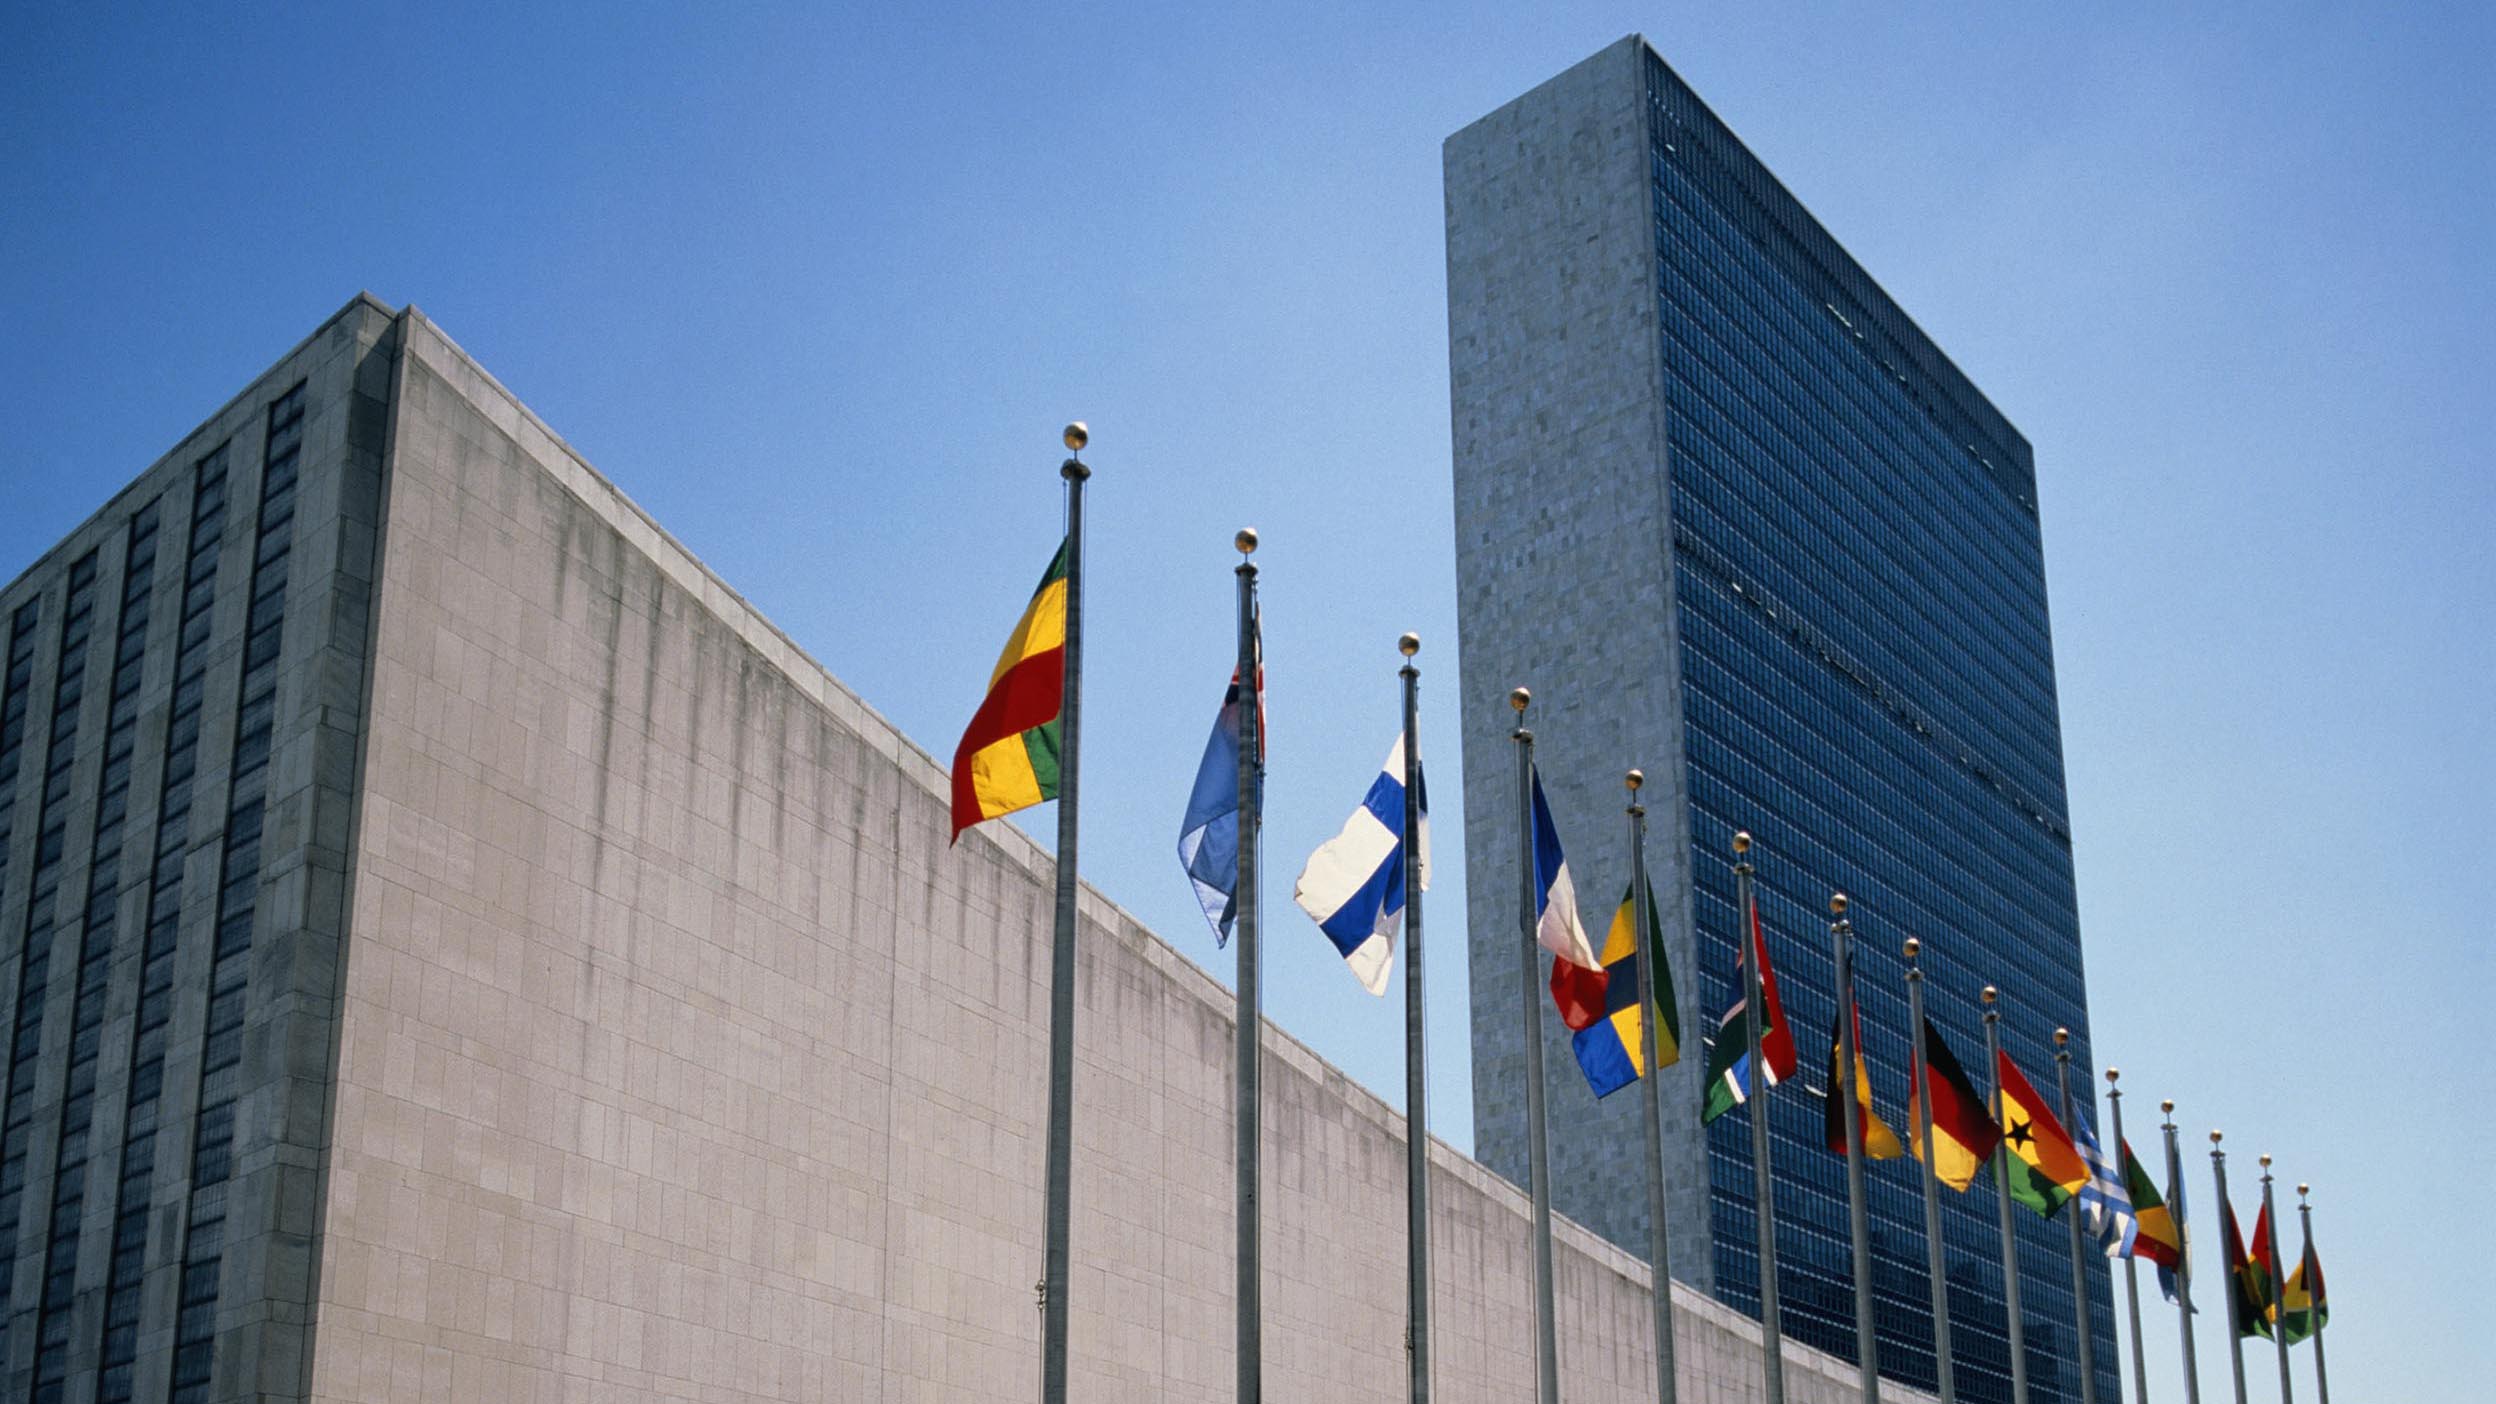 Les drapeaux flottent devant le siège des Nations Unies.